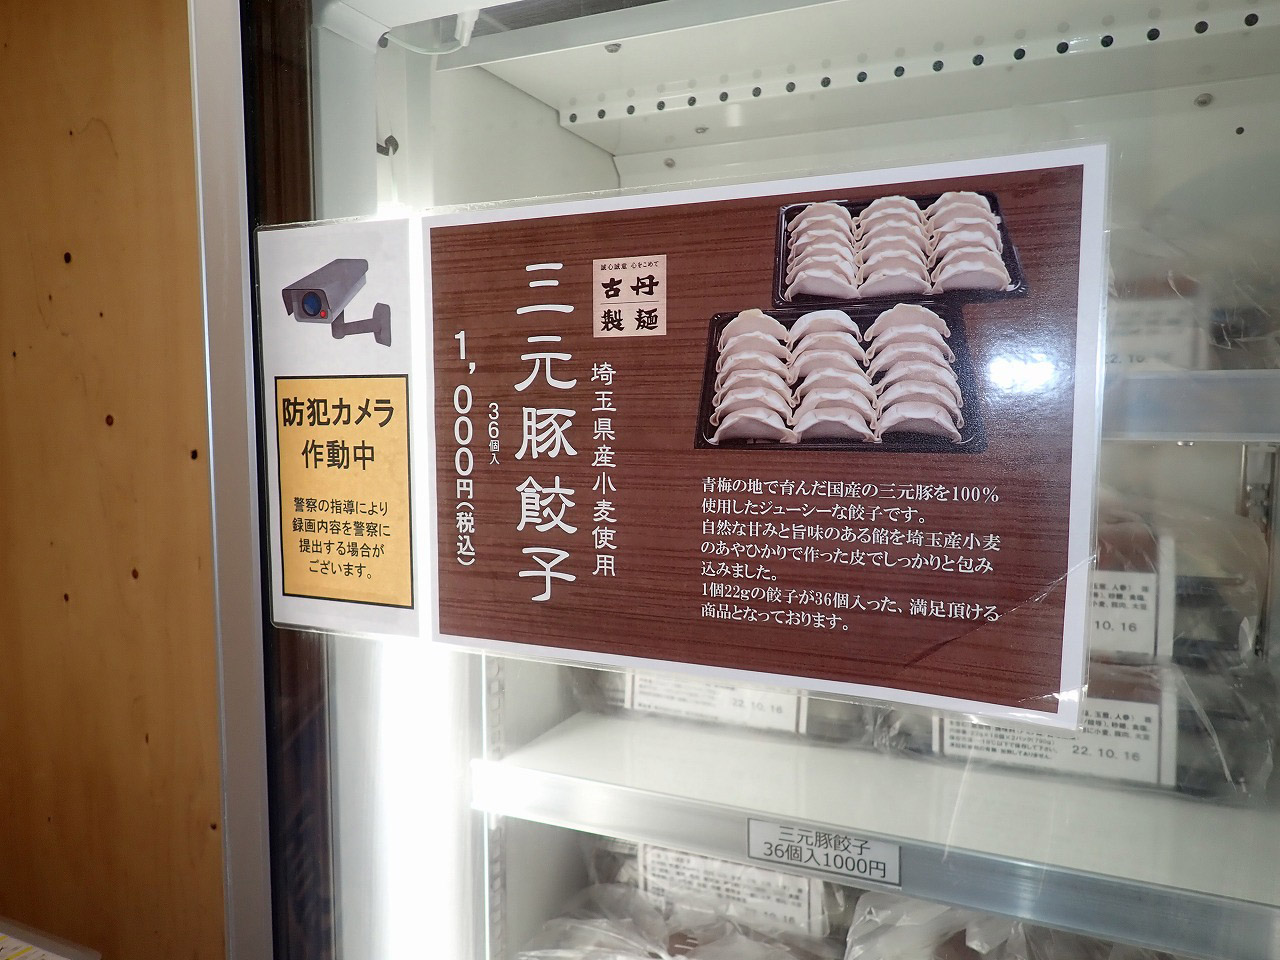 ちなみに三元豚餃子の普段の販売価格は36個入りで1,000円です